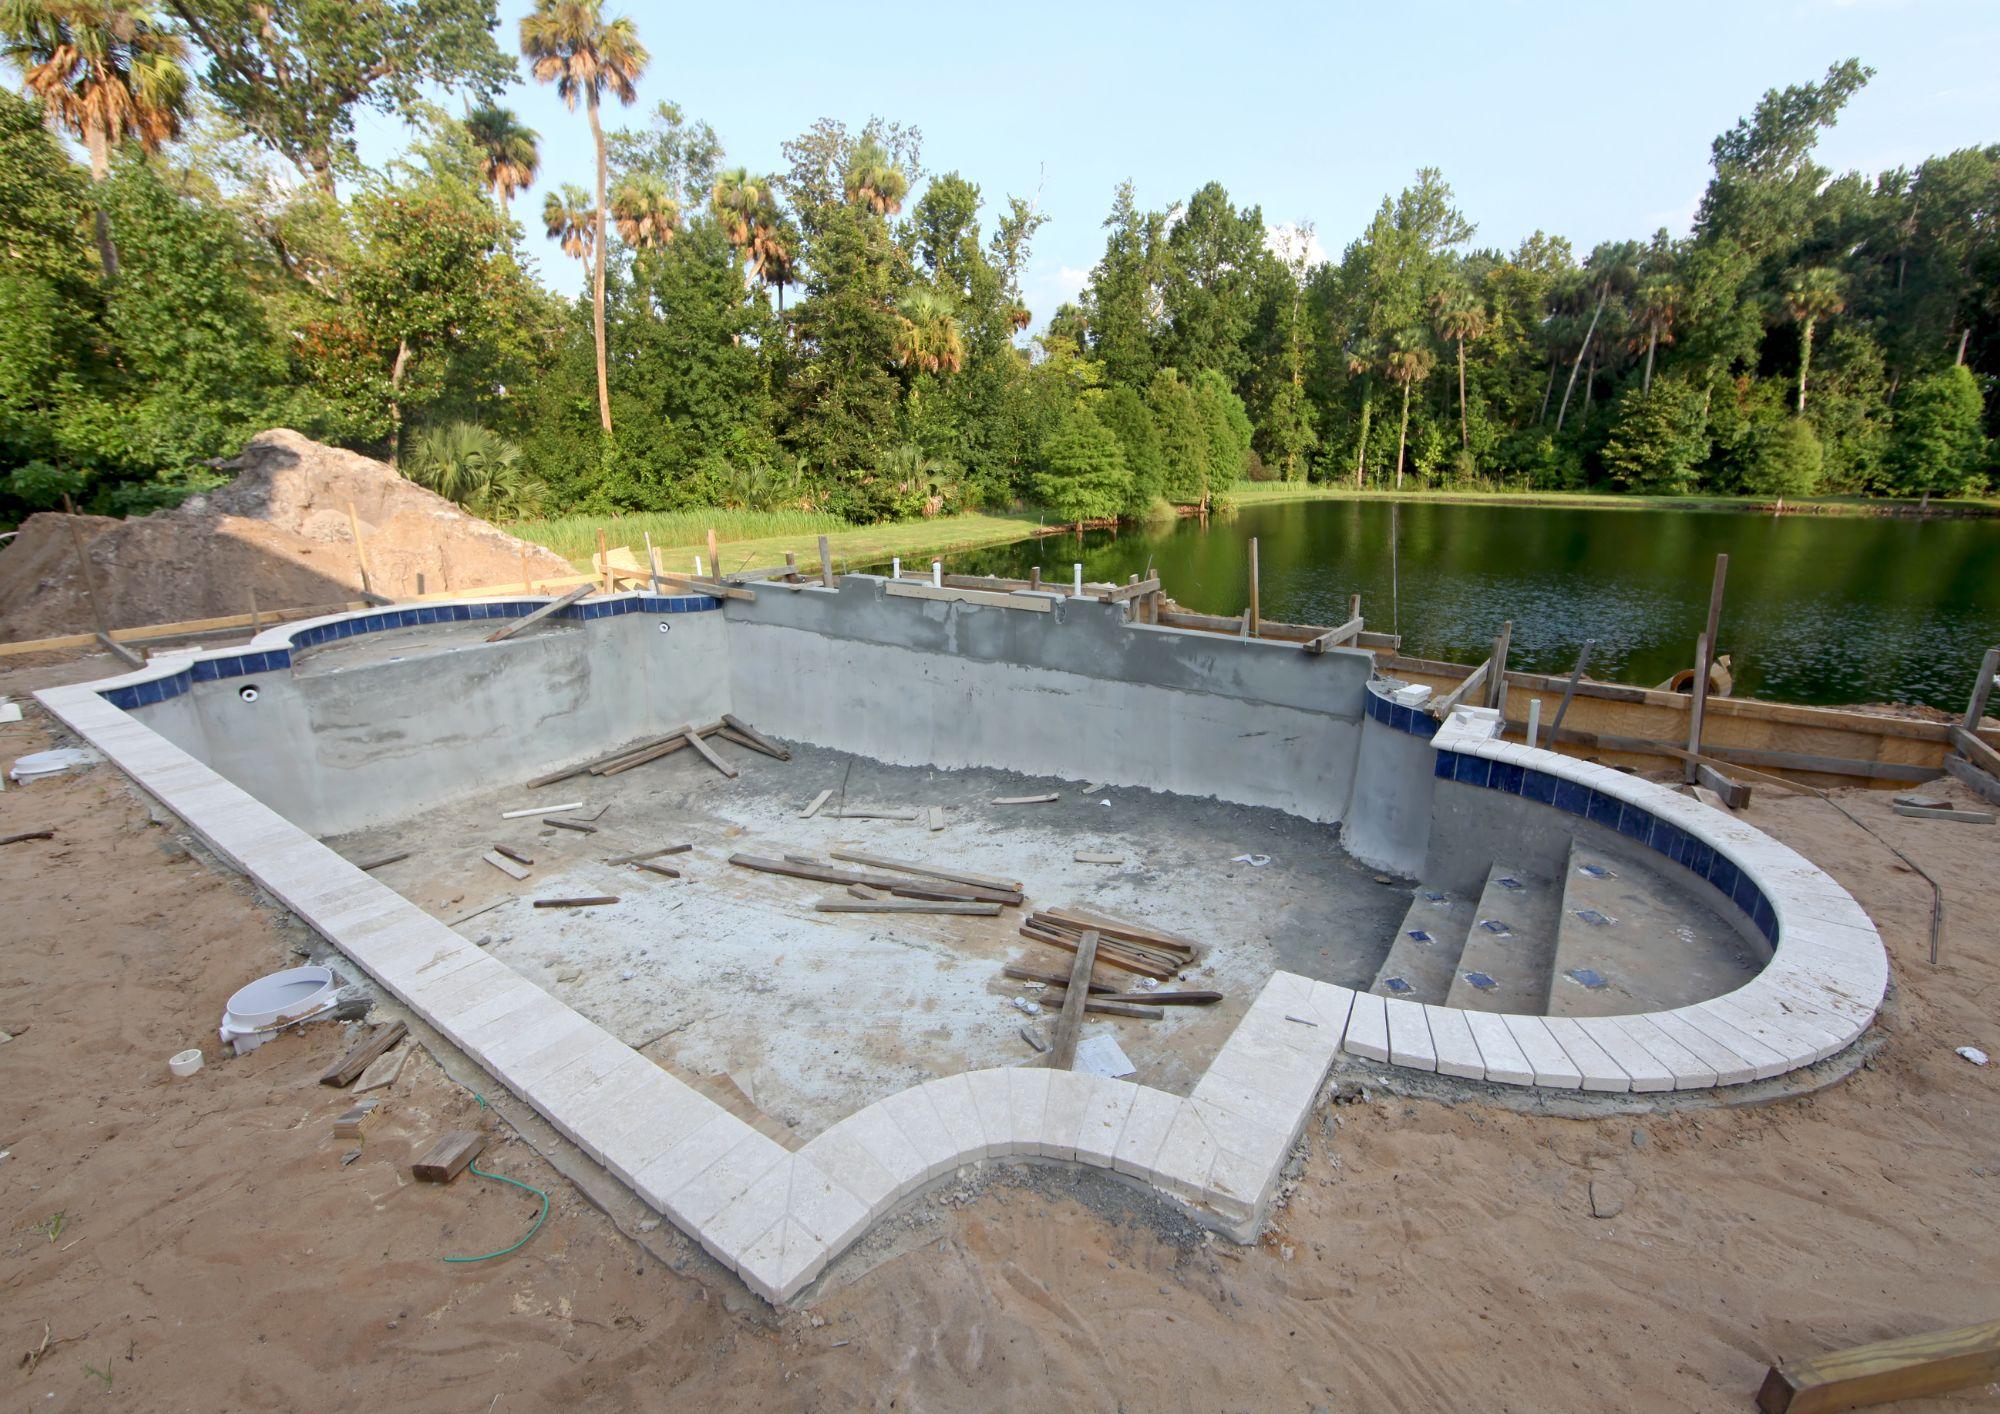 Proceso de construccion de una piscina en un patio exterior